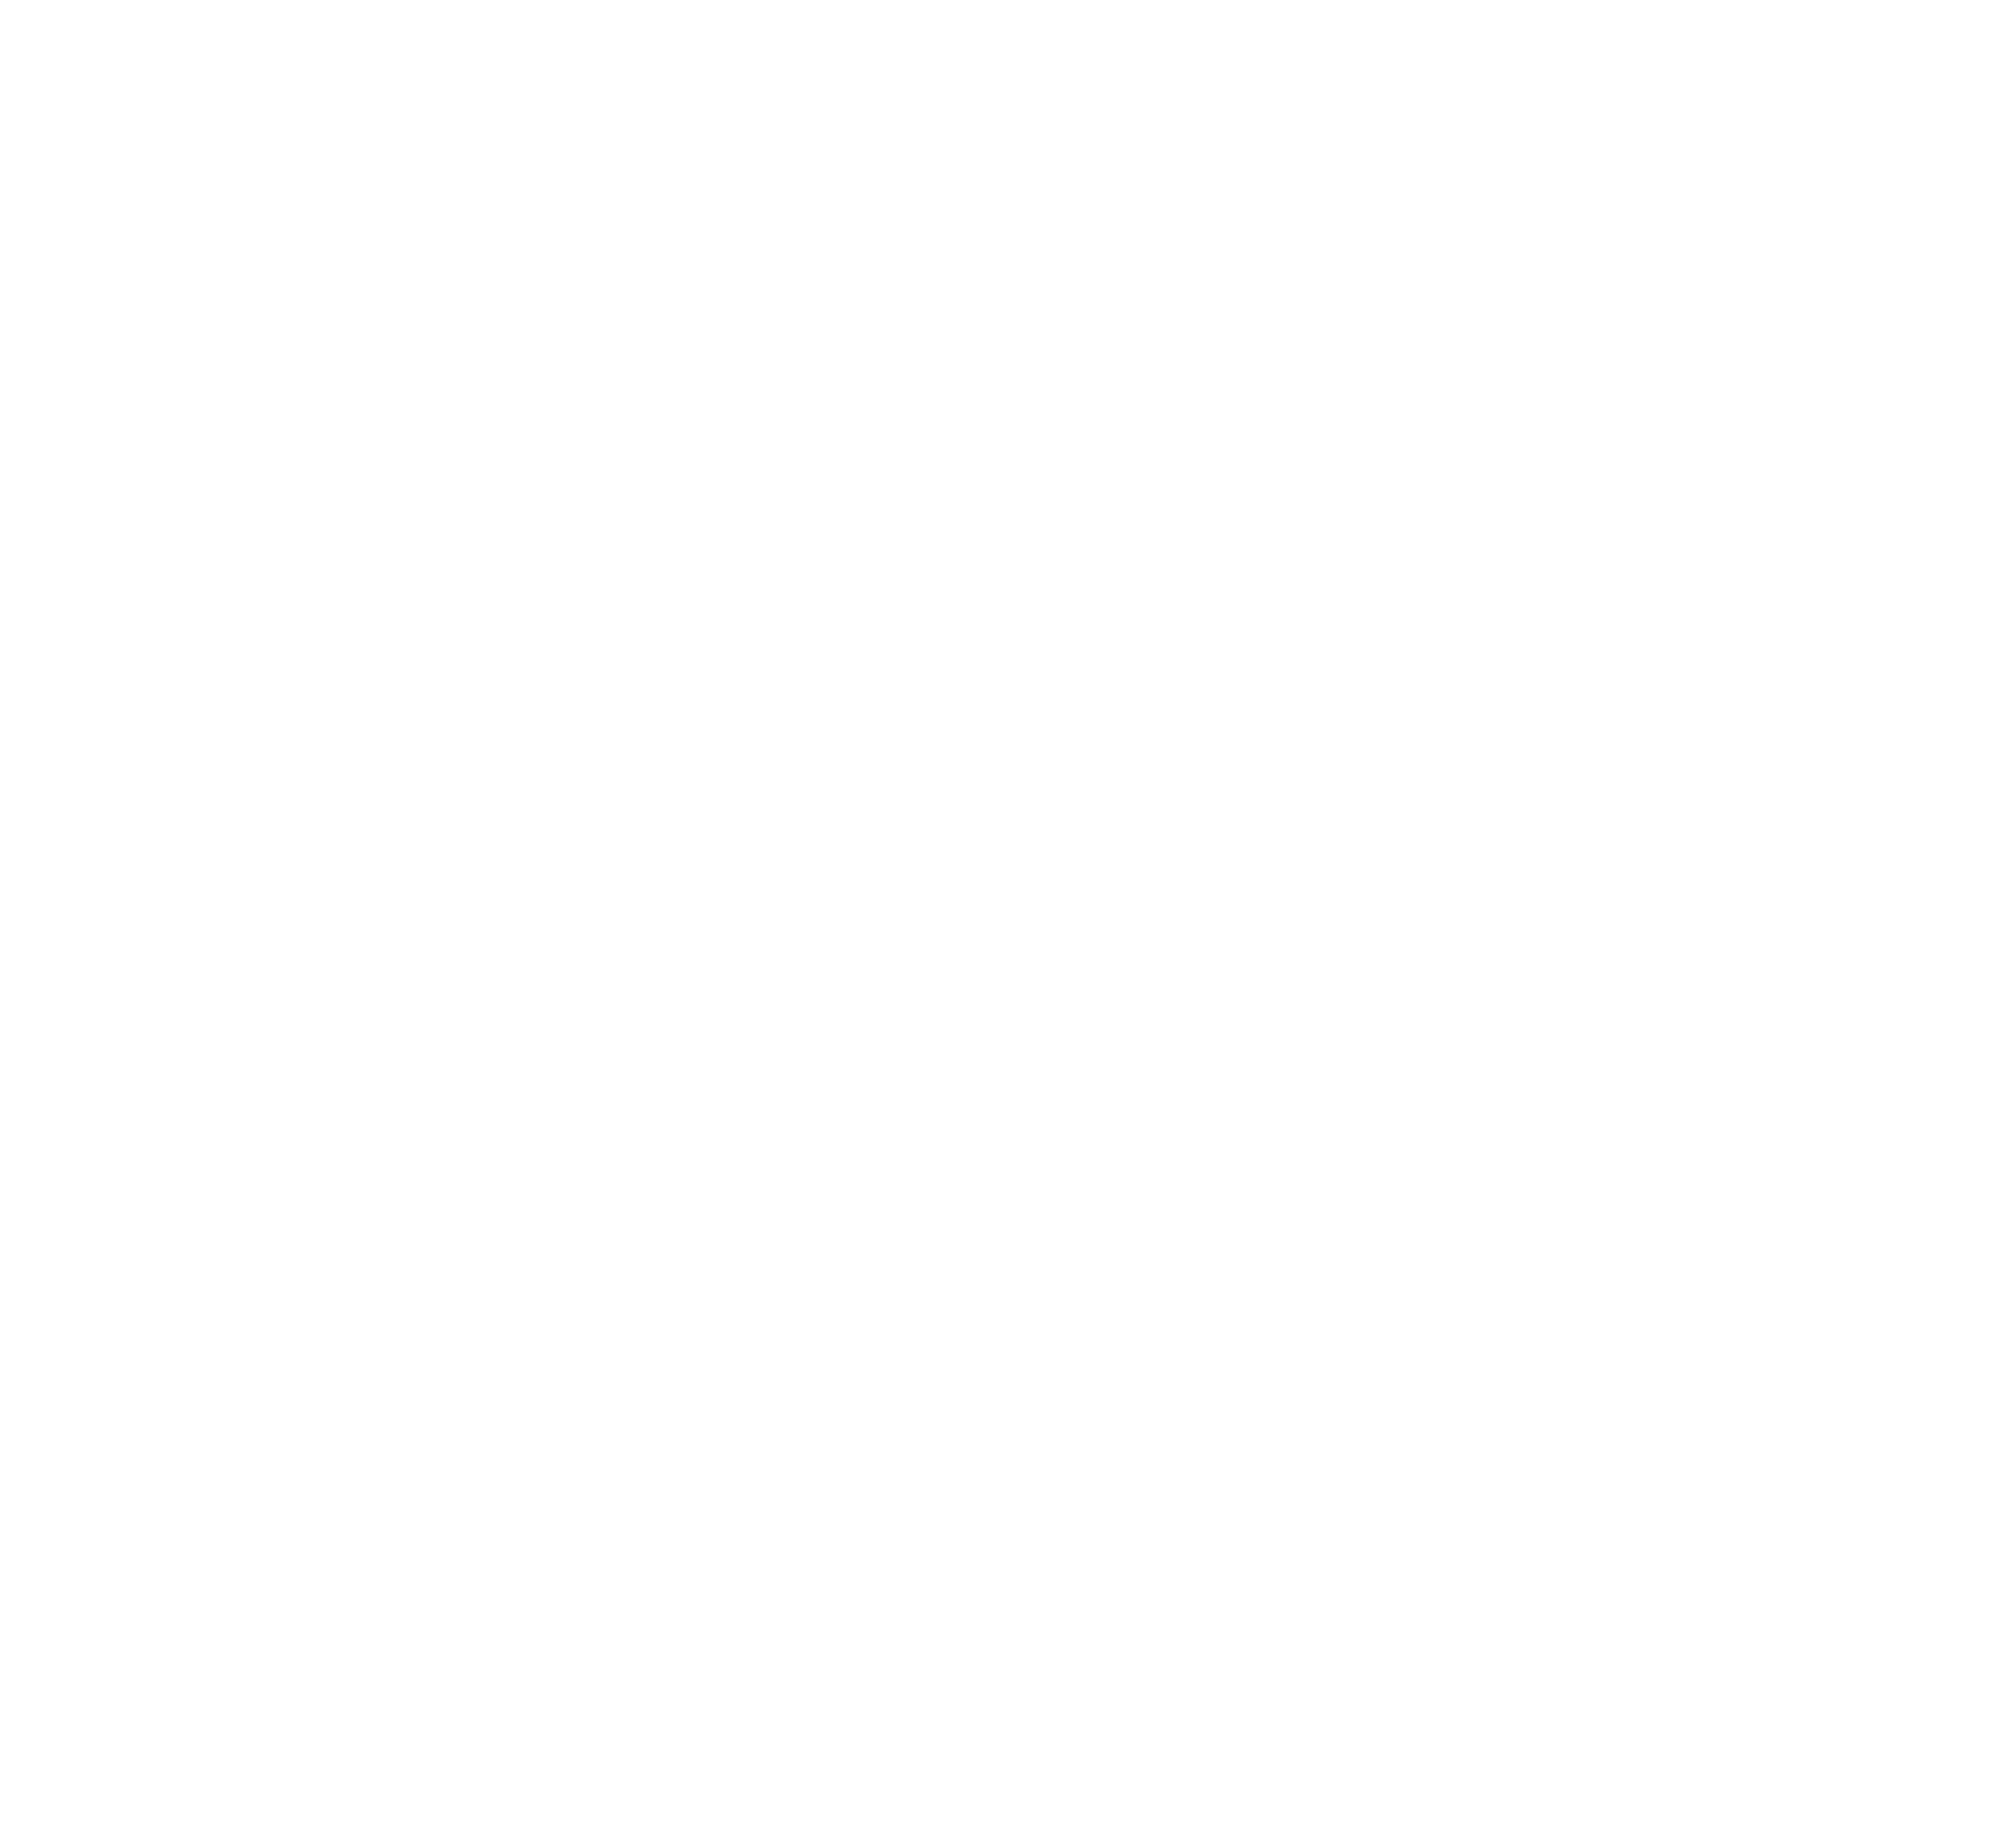 hyd_youth_mechwordmark_logo_large2